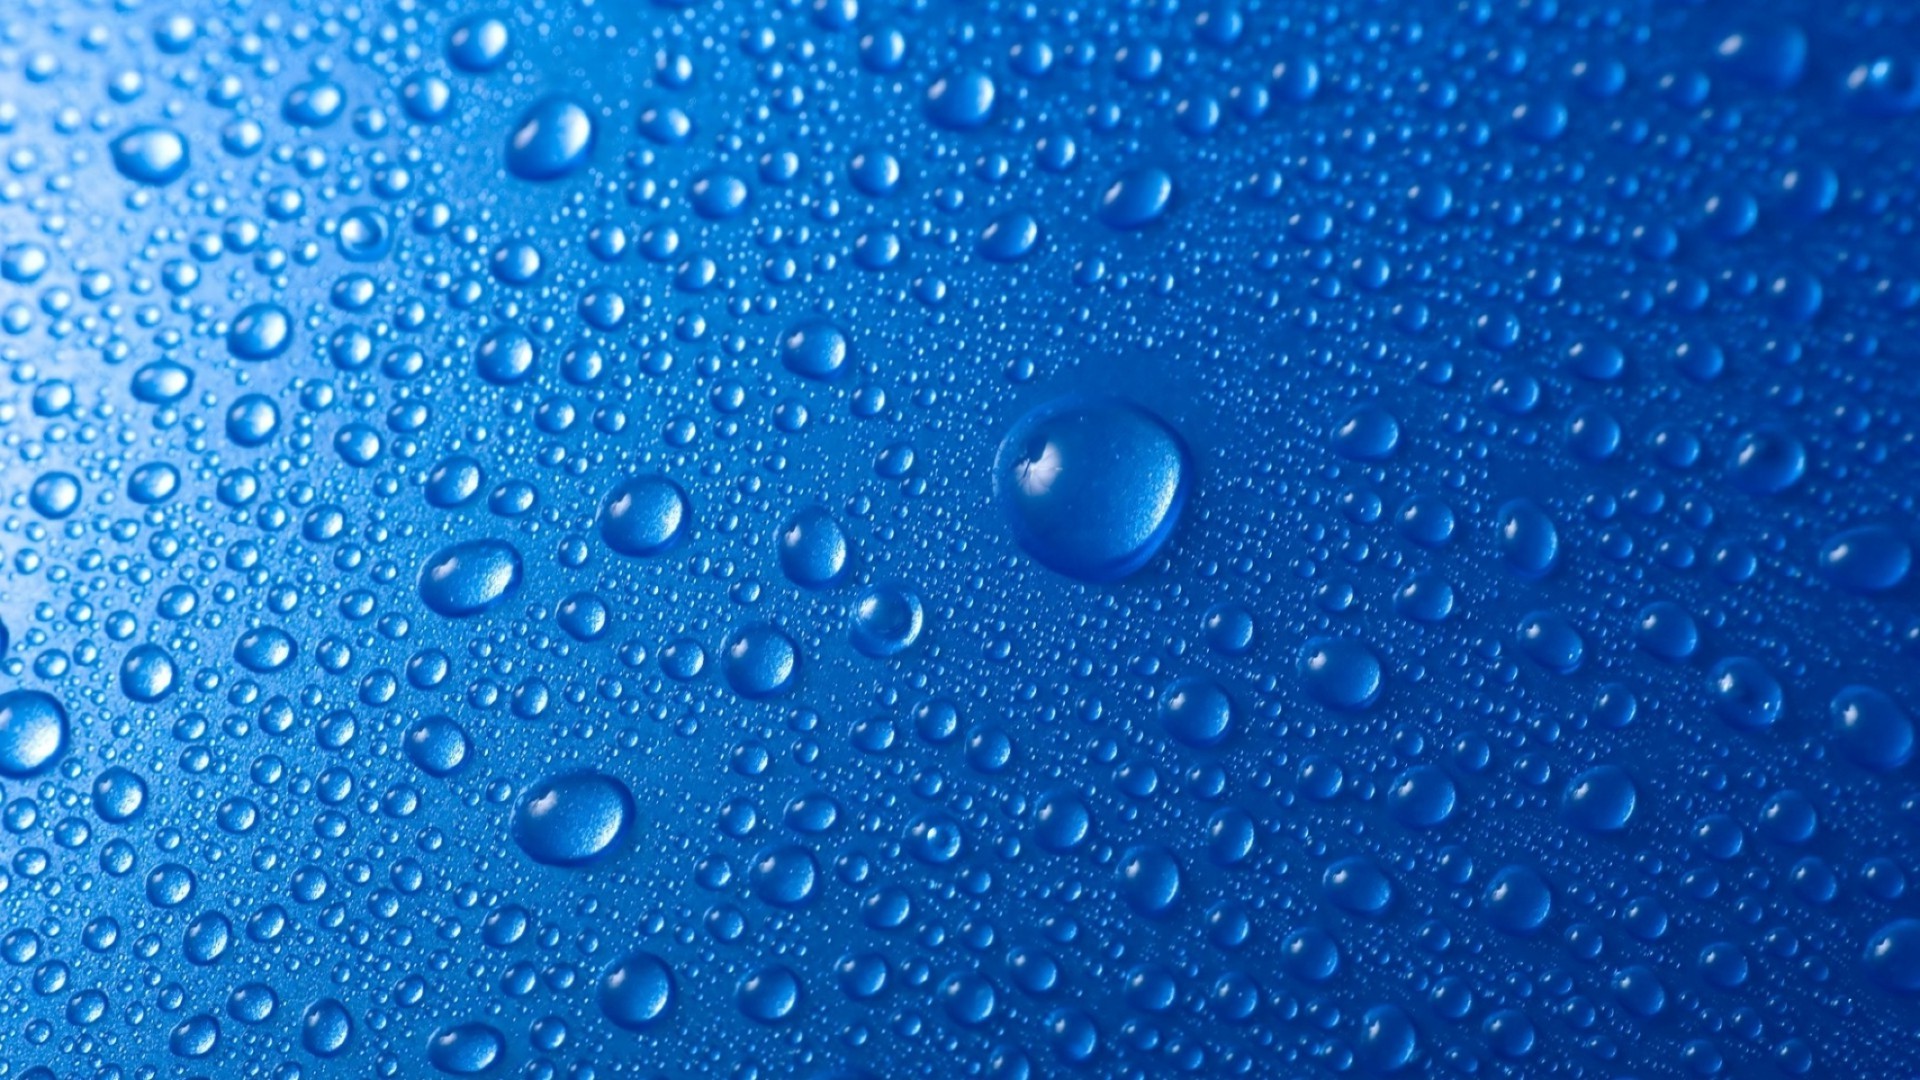 вода дождь мокрый росы падение капли пузырь чистые бирюза понятно капли водослива мыть всплеск дождей жидкость чистота чисто